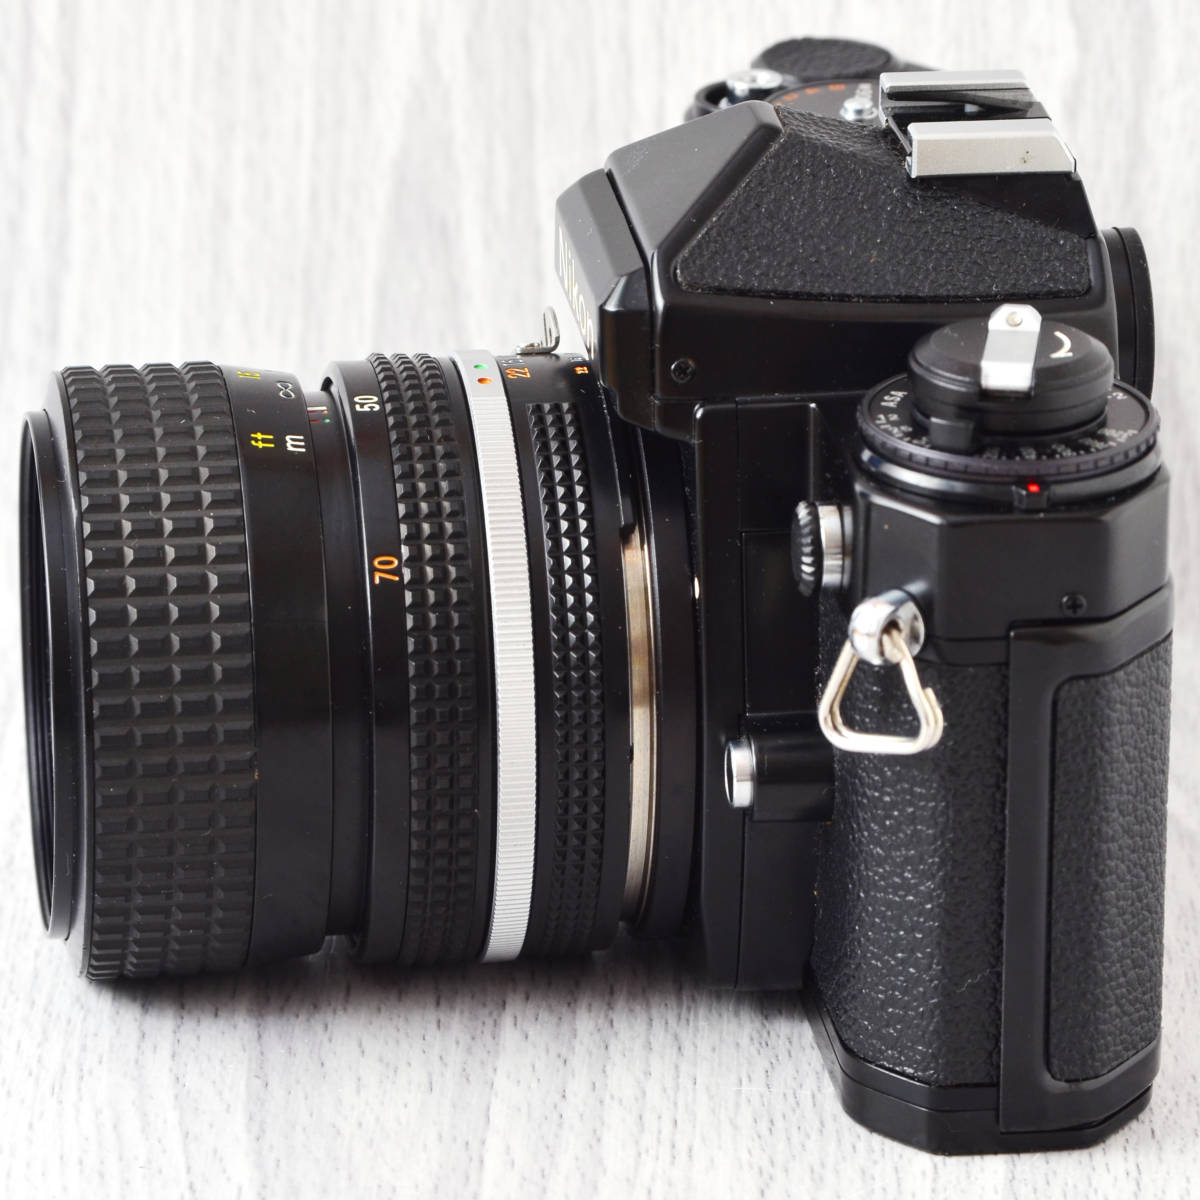 ヤフオク! - 極上おすすめ Nikon FE 黒 + 35～70mm f3.3～4.5